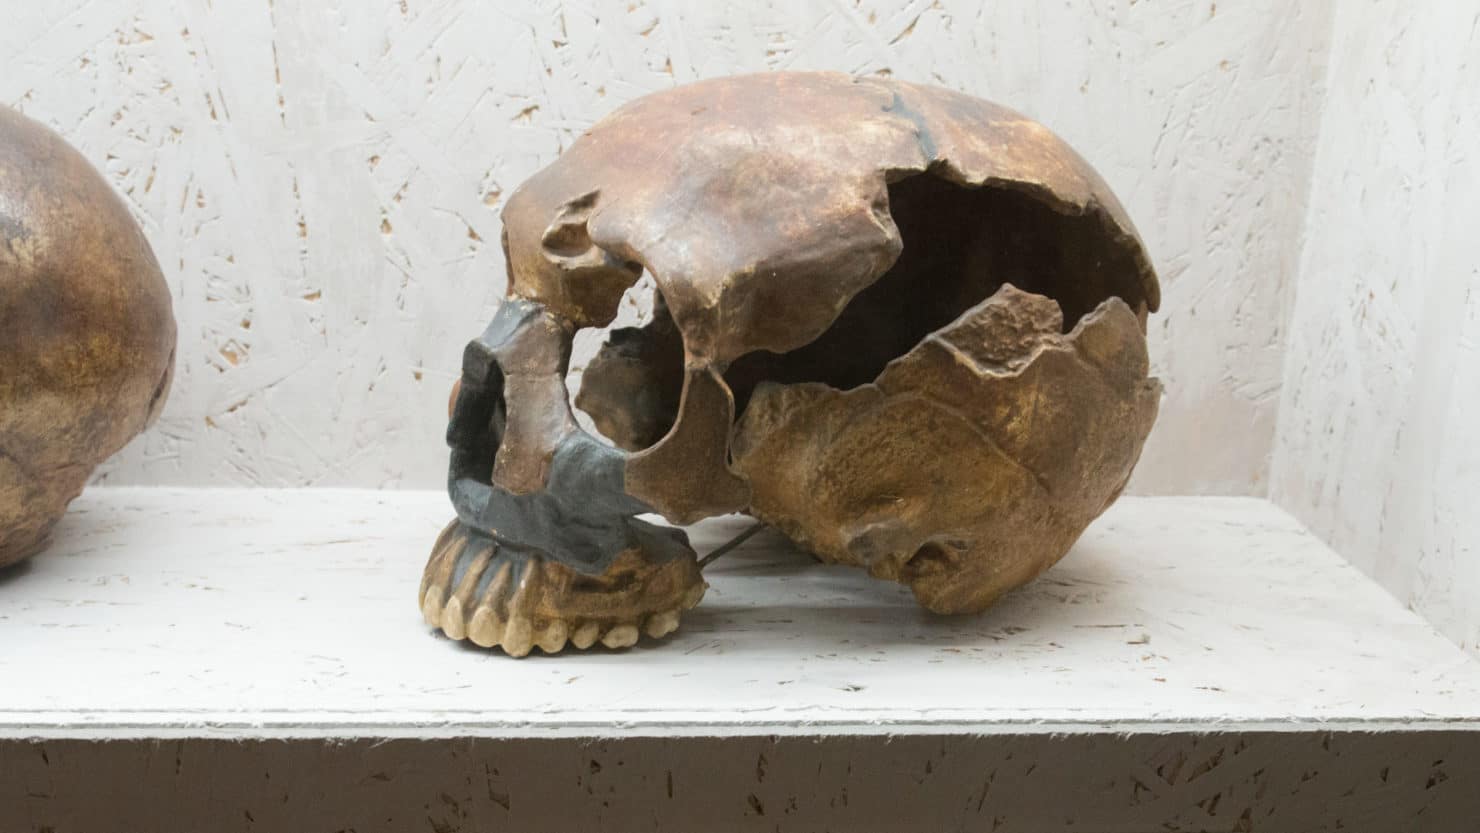 neanderthal-skull-replica-crop-1480x833.jpg